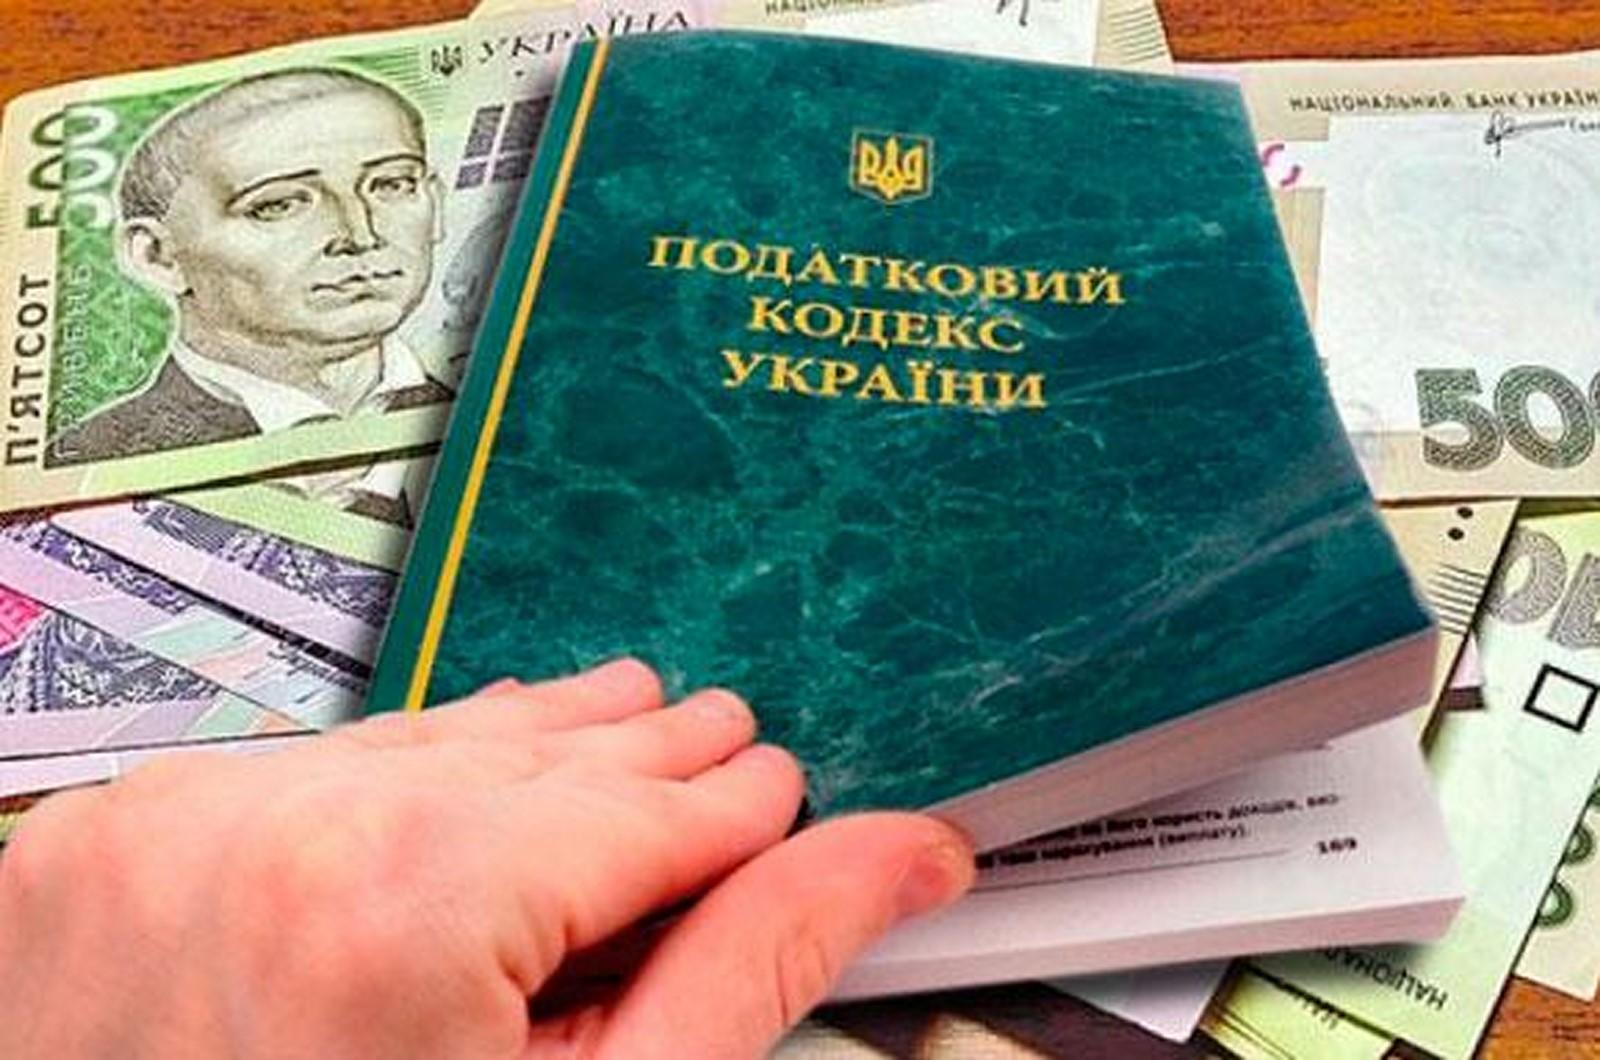 Предприятия Киевщины за 8 месяцев уплатили в Госбюджет почти 2 млрд грн налога на прибыль